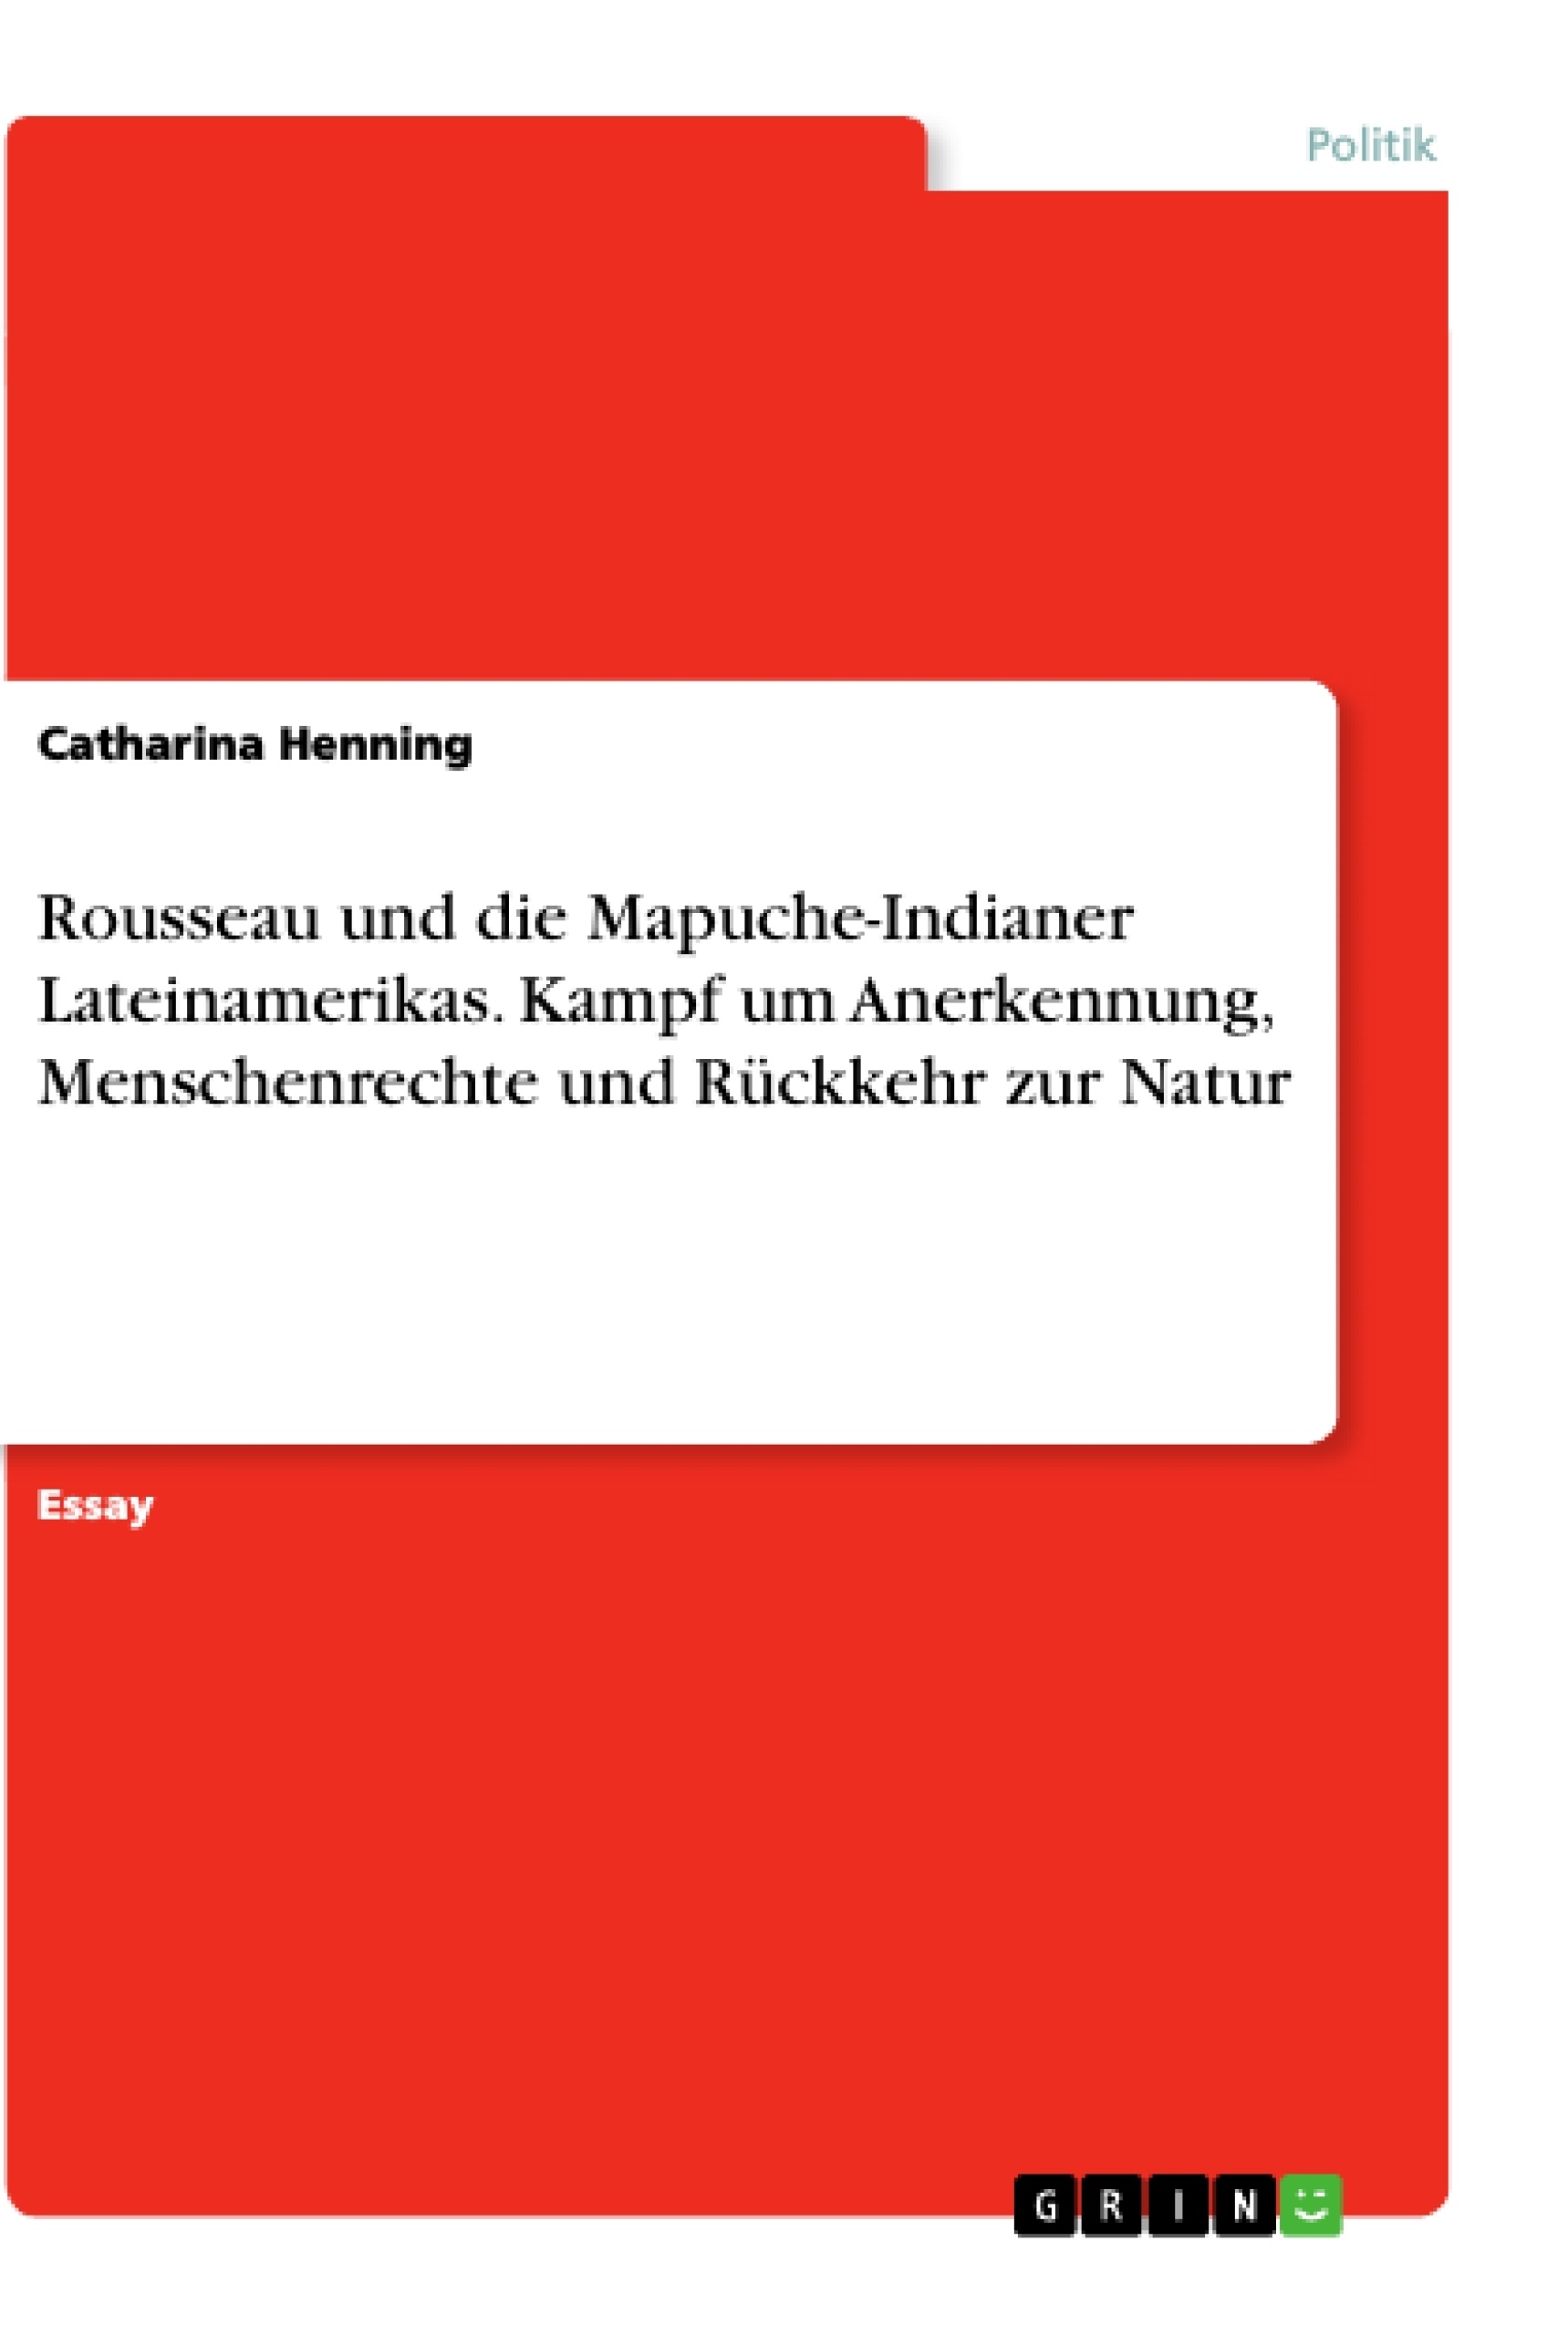 Titel: Rousseau und die Mapuche-Indianer Lateinamerikas. Kampf um Anerkennung, Menschenrechte und Rückkehr zur Natur